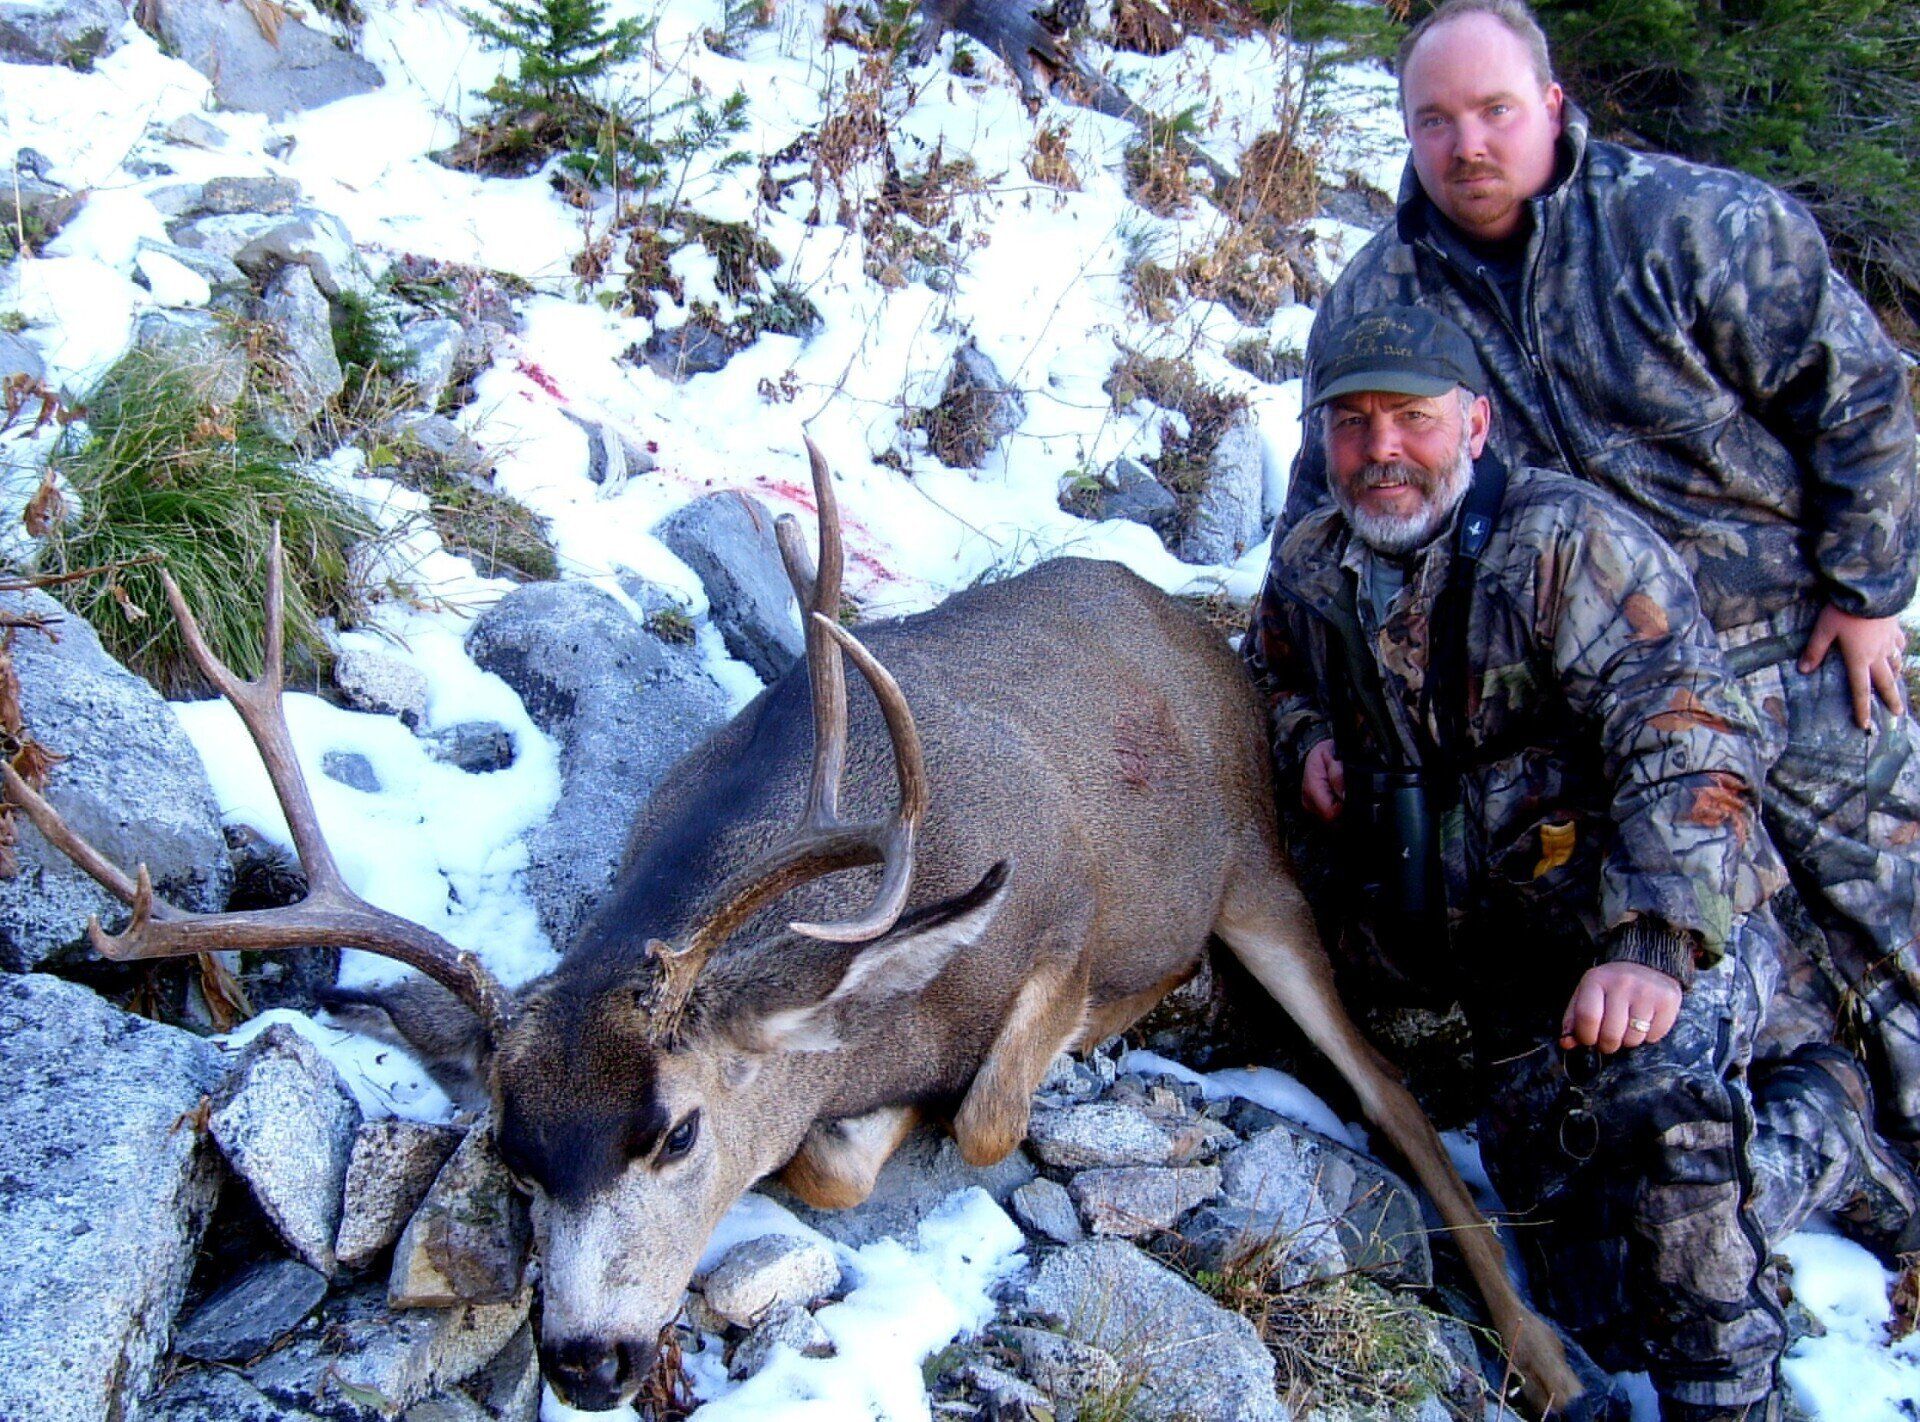 Idaho Mule deer hunting outfitter, Idaho Mule deer hunting guide,